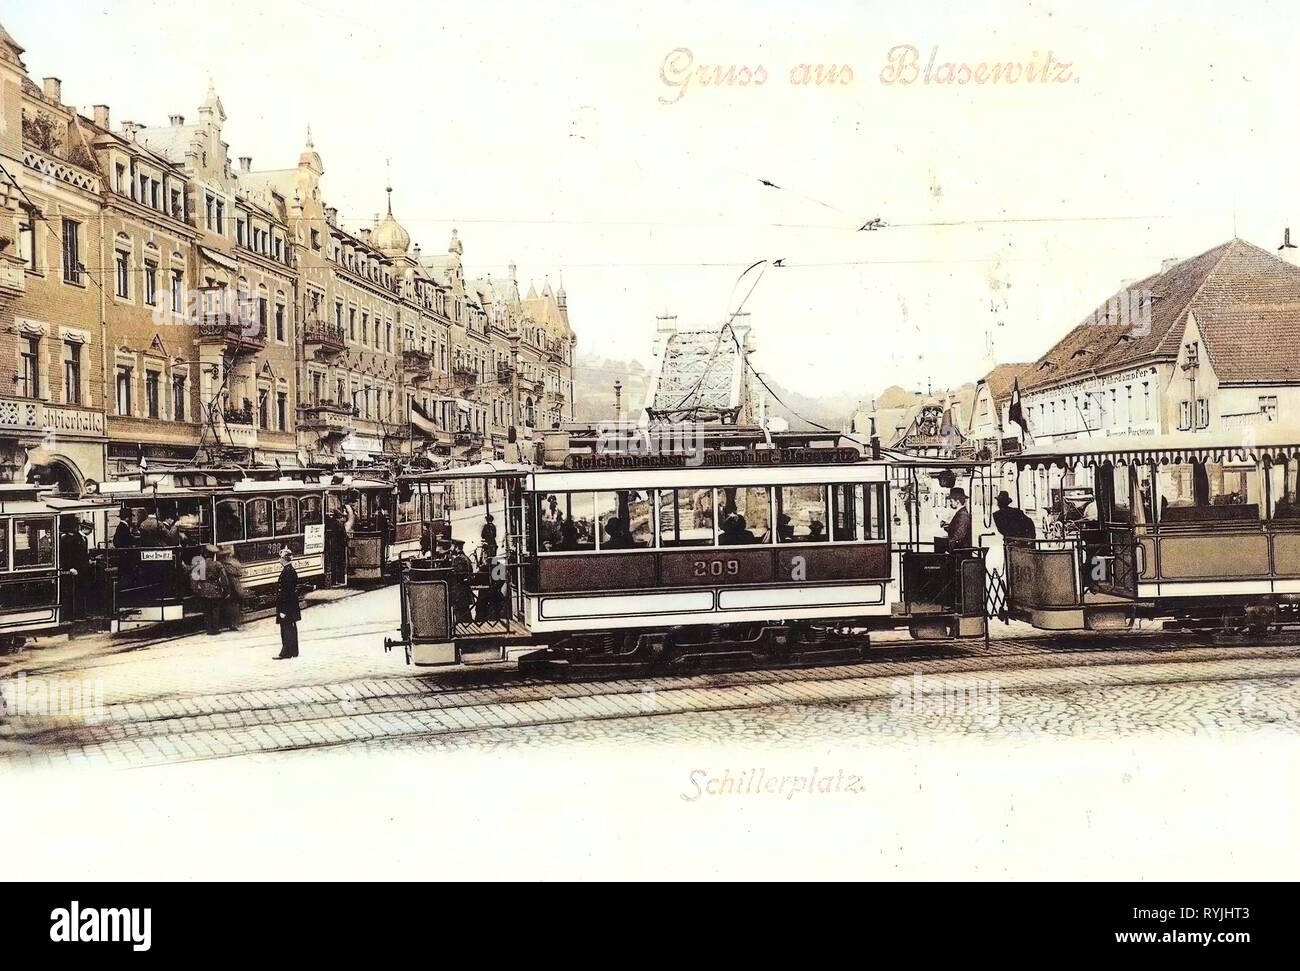 Trams in Dresden, Schillerplatz, Dresden, Blue Wonder, Number 209 on trams, Number 195 on trams, Buildings in Dresden, 1898, Blasewitz, Germany Stock Photo